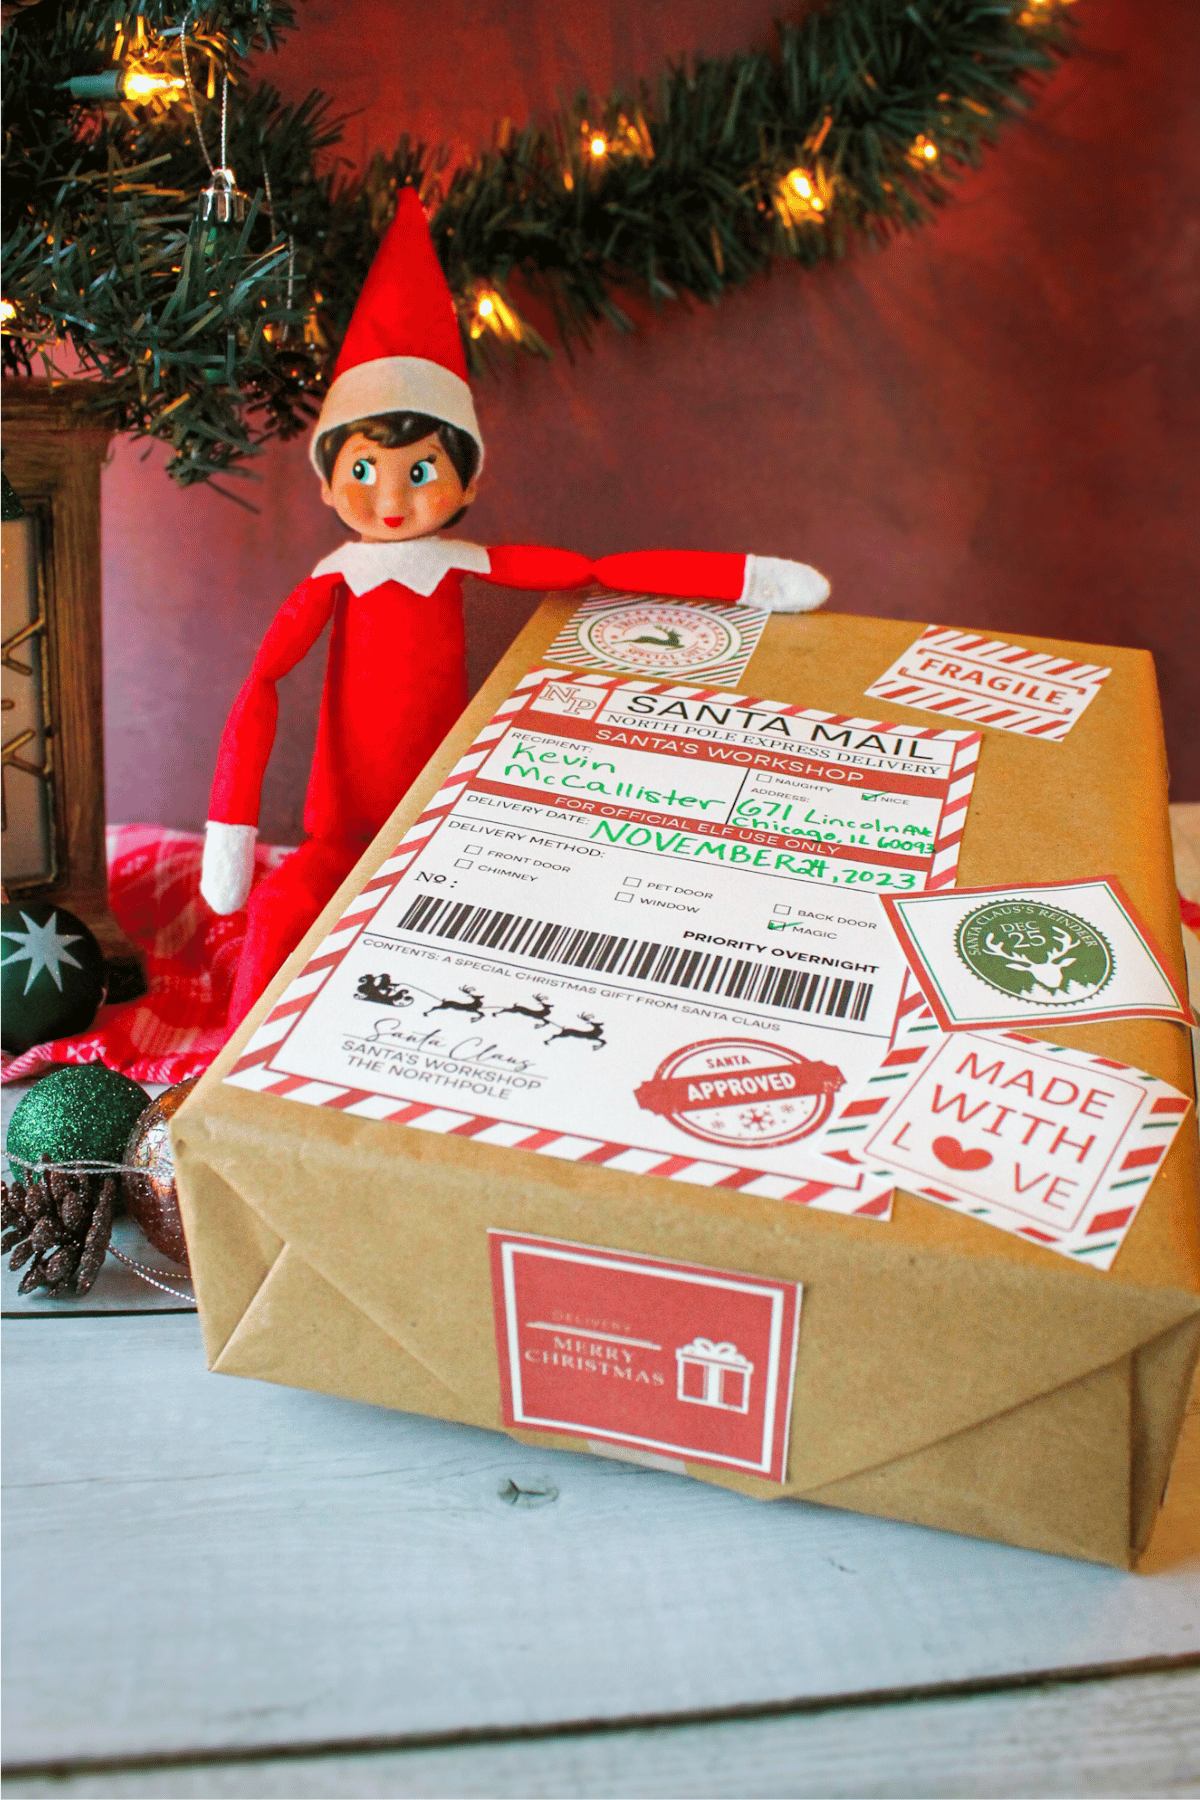 Elf bringing Santa mail box